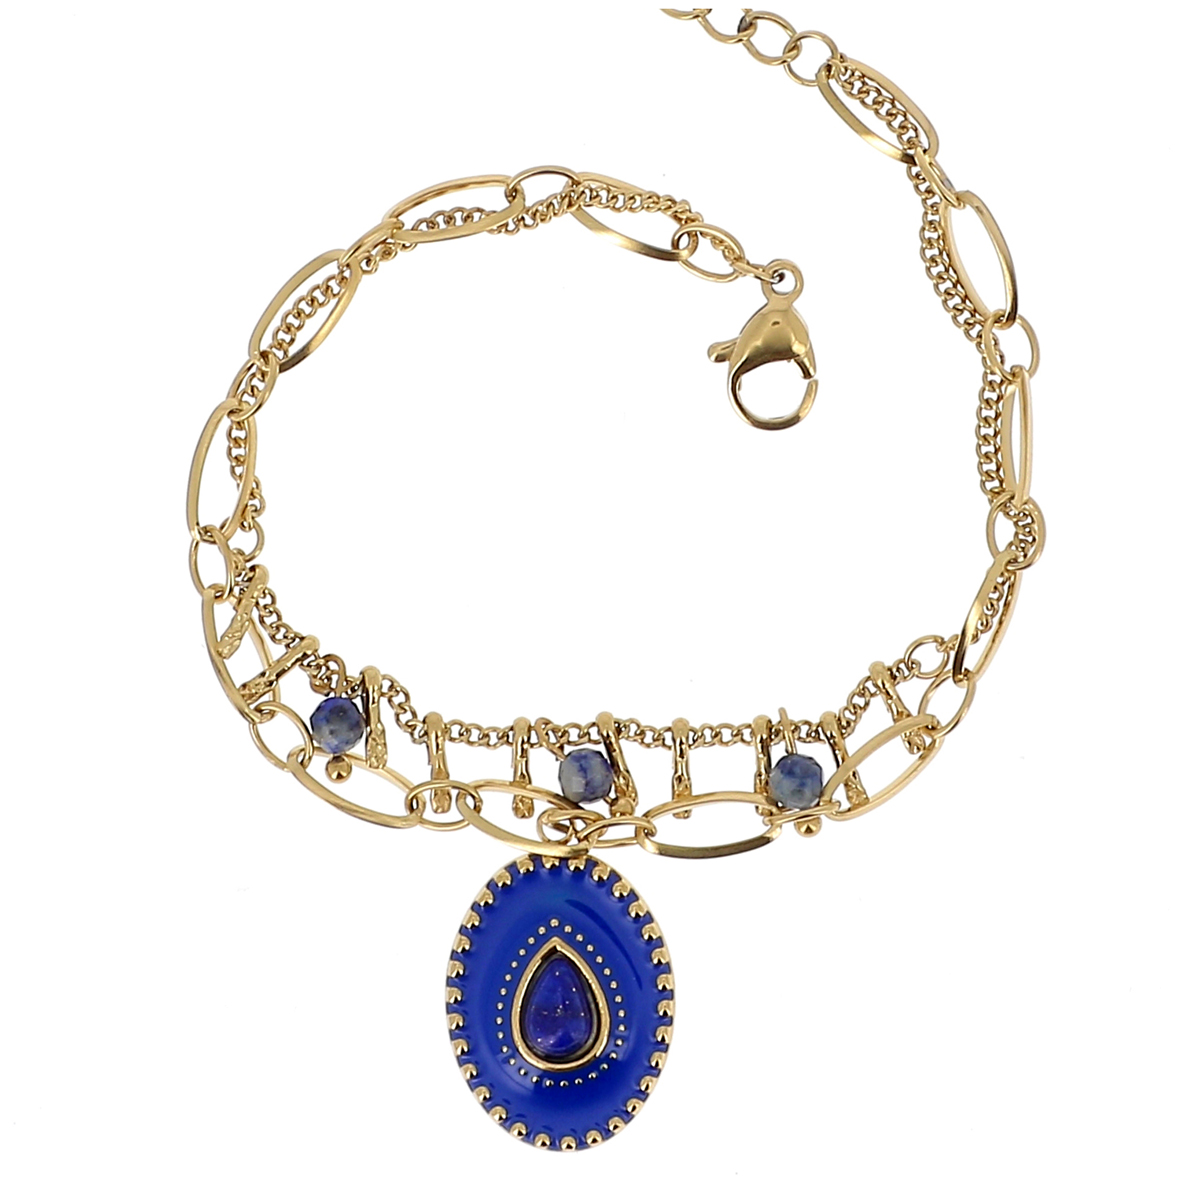 Bracelet créateur Acier \'Cléopatra\' bleu doré - 18x14 mm (2 rangs) - [R4521]